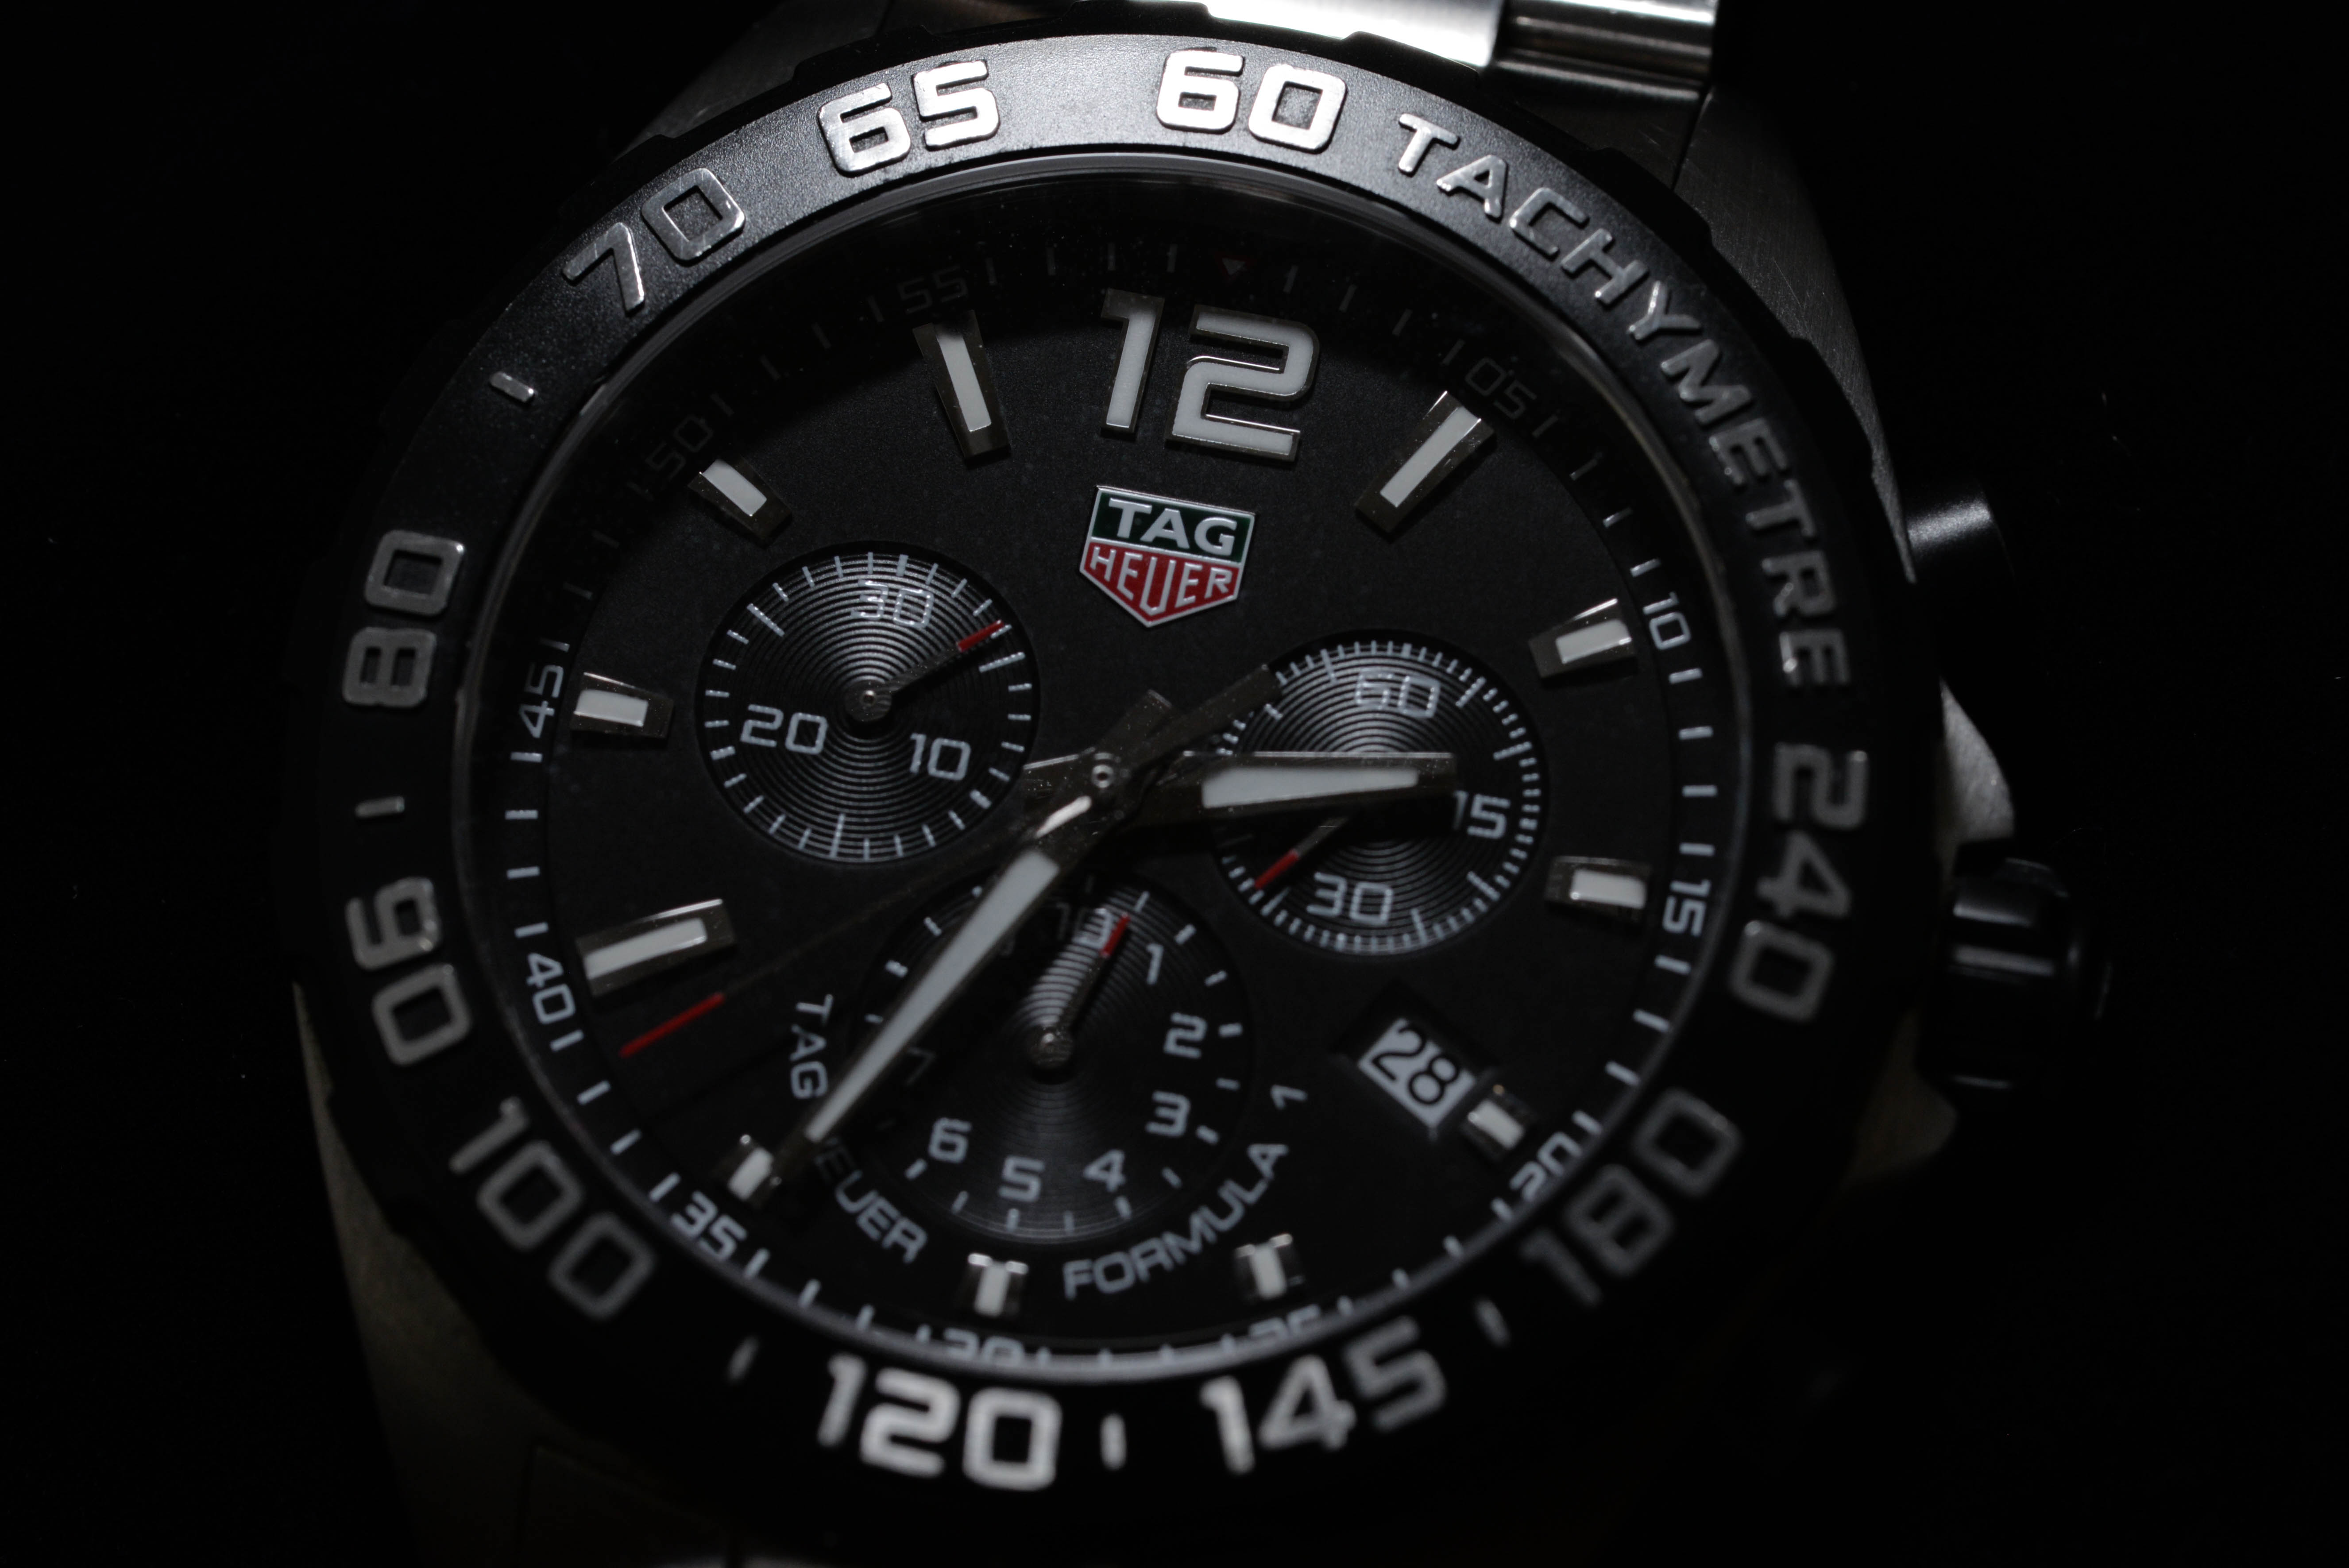 白岩さんの腕時計はタグ・ホイヤー フォーミュラ1 Ref.CAZ1010 BA0842